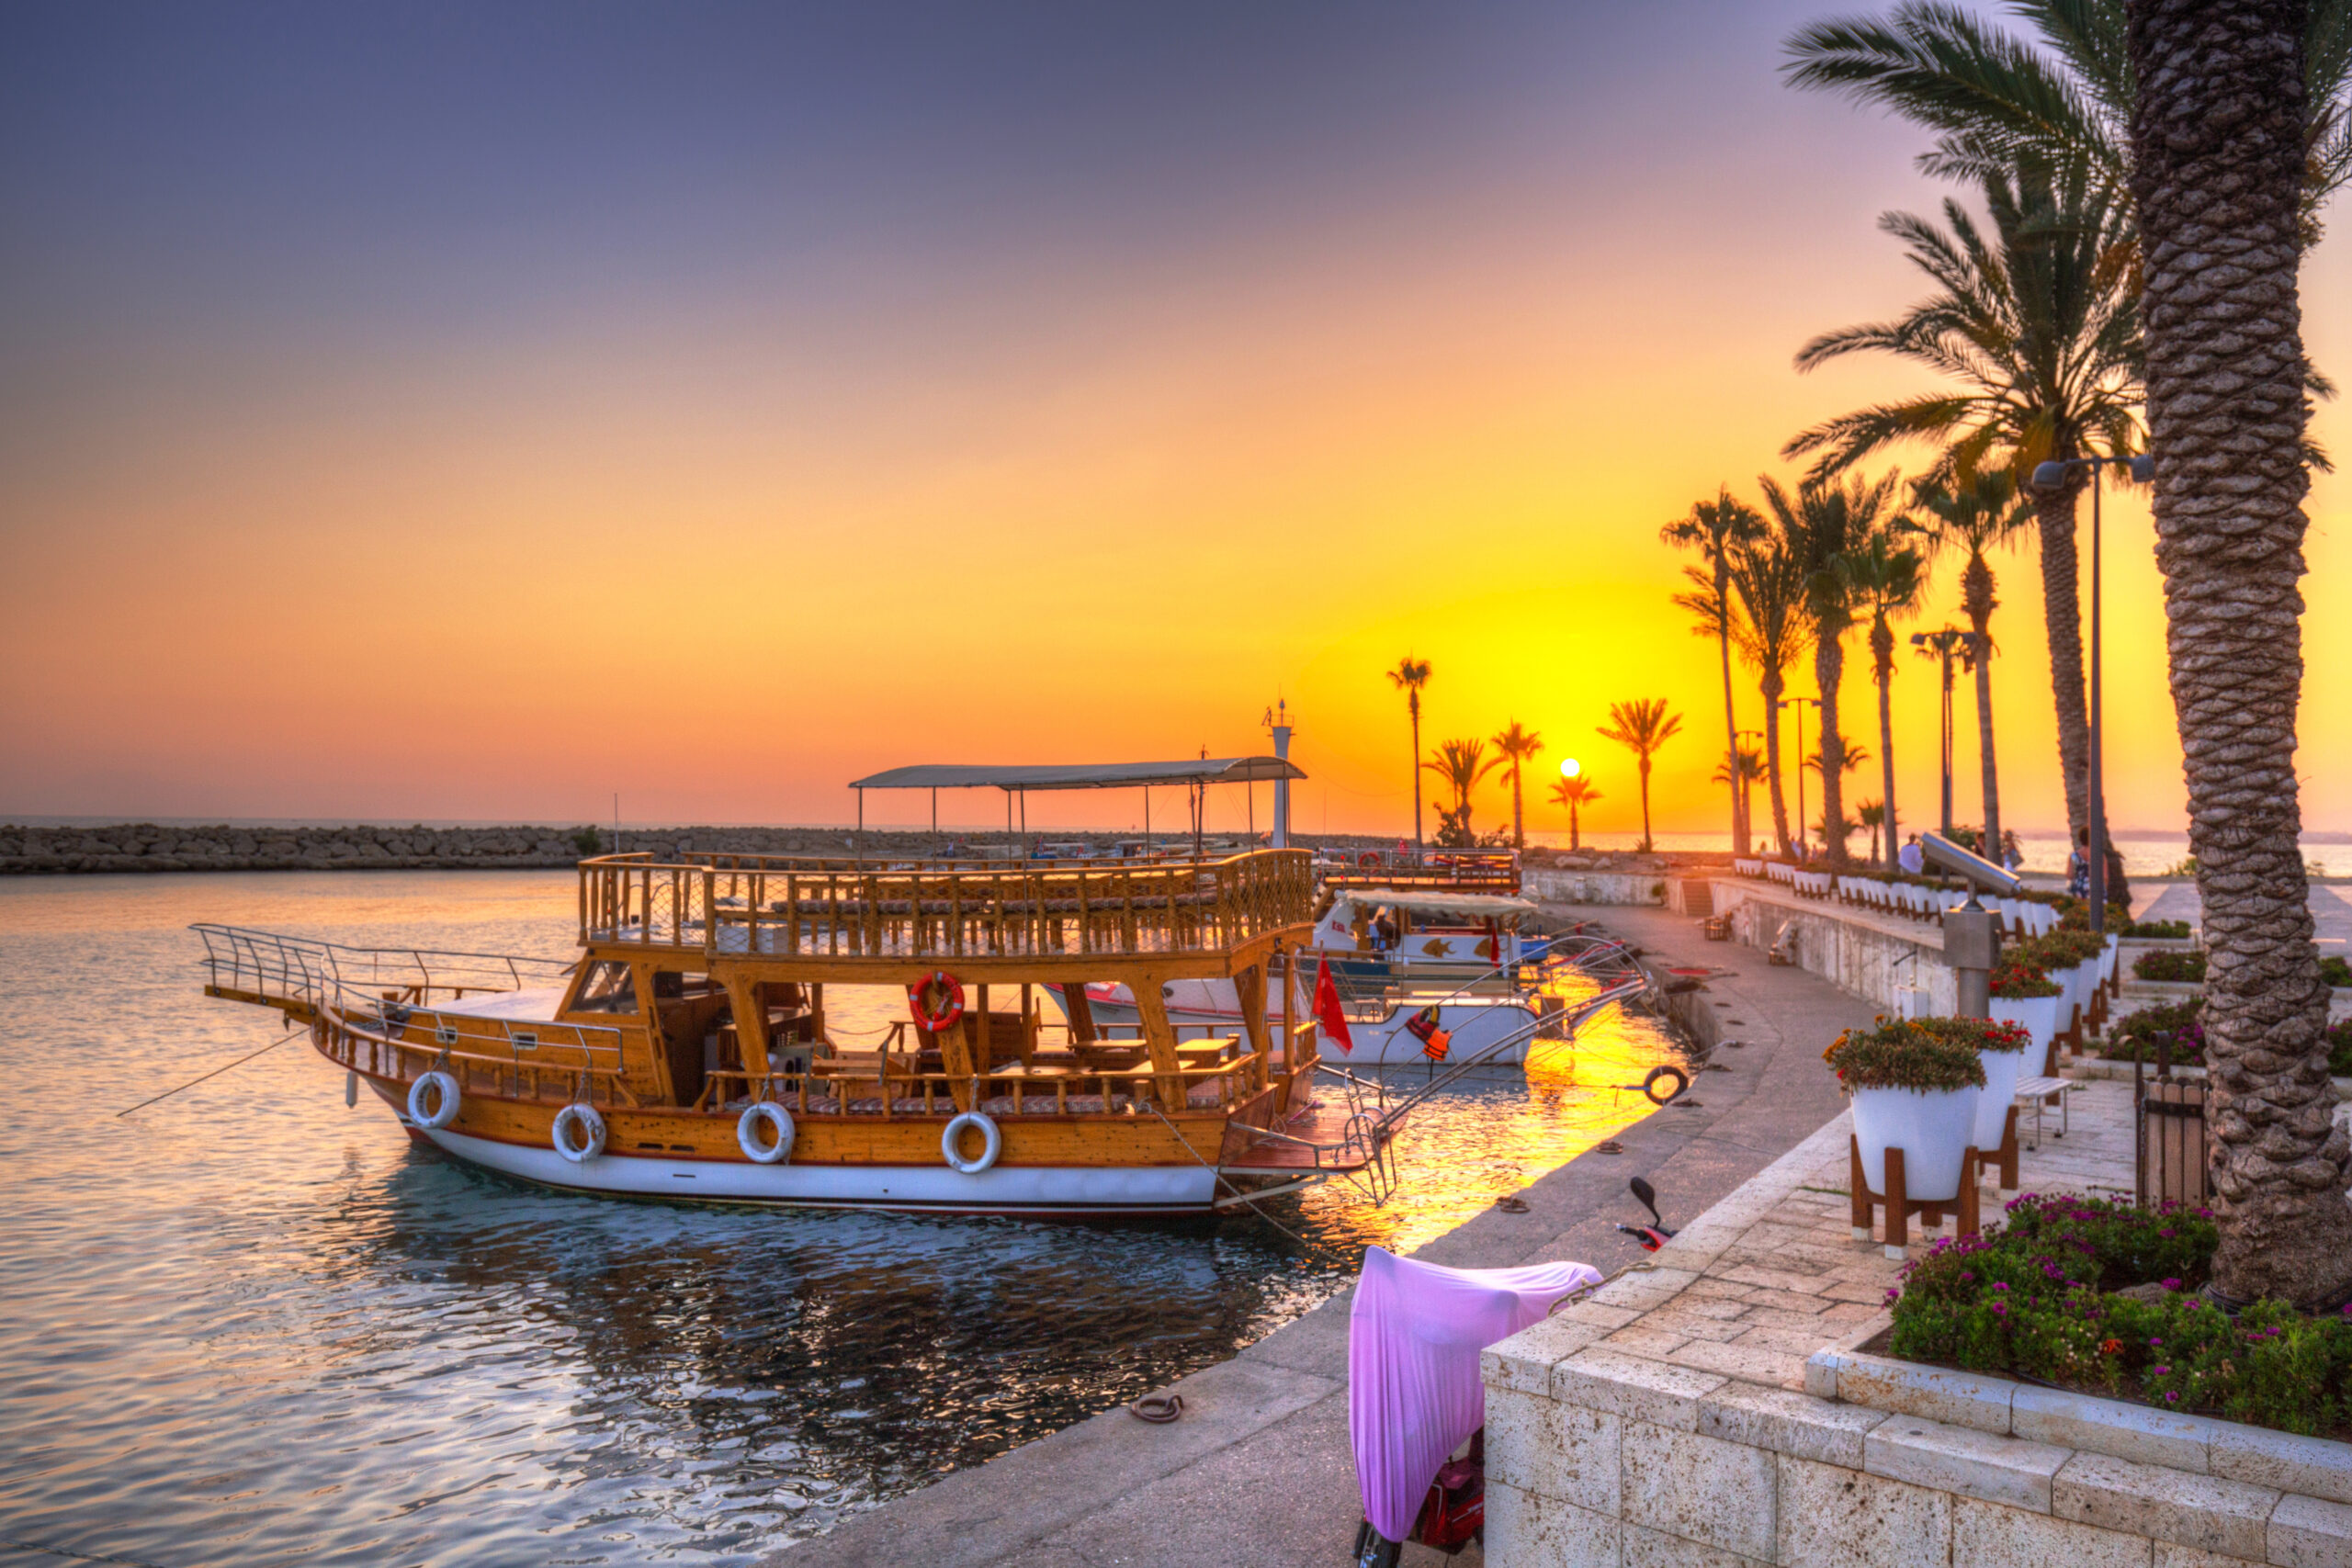 Antalya Urlaub: Entdecken Sie die faszinierenden Sehenswürdigkeiten dieser mediterranen Stadt